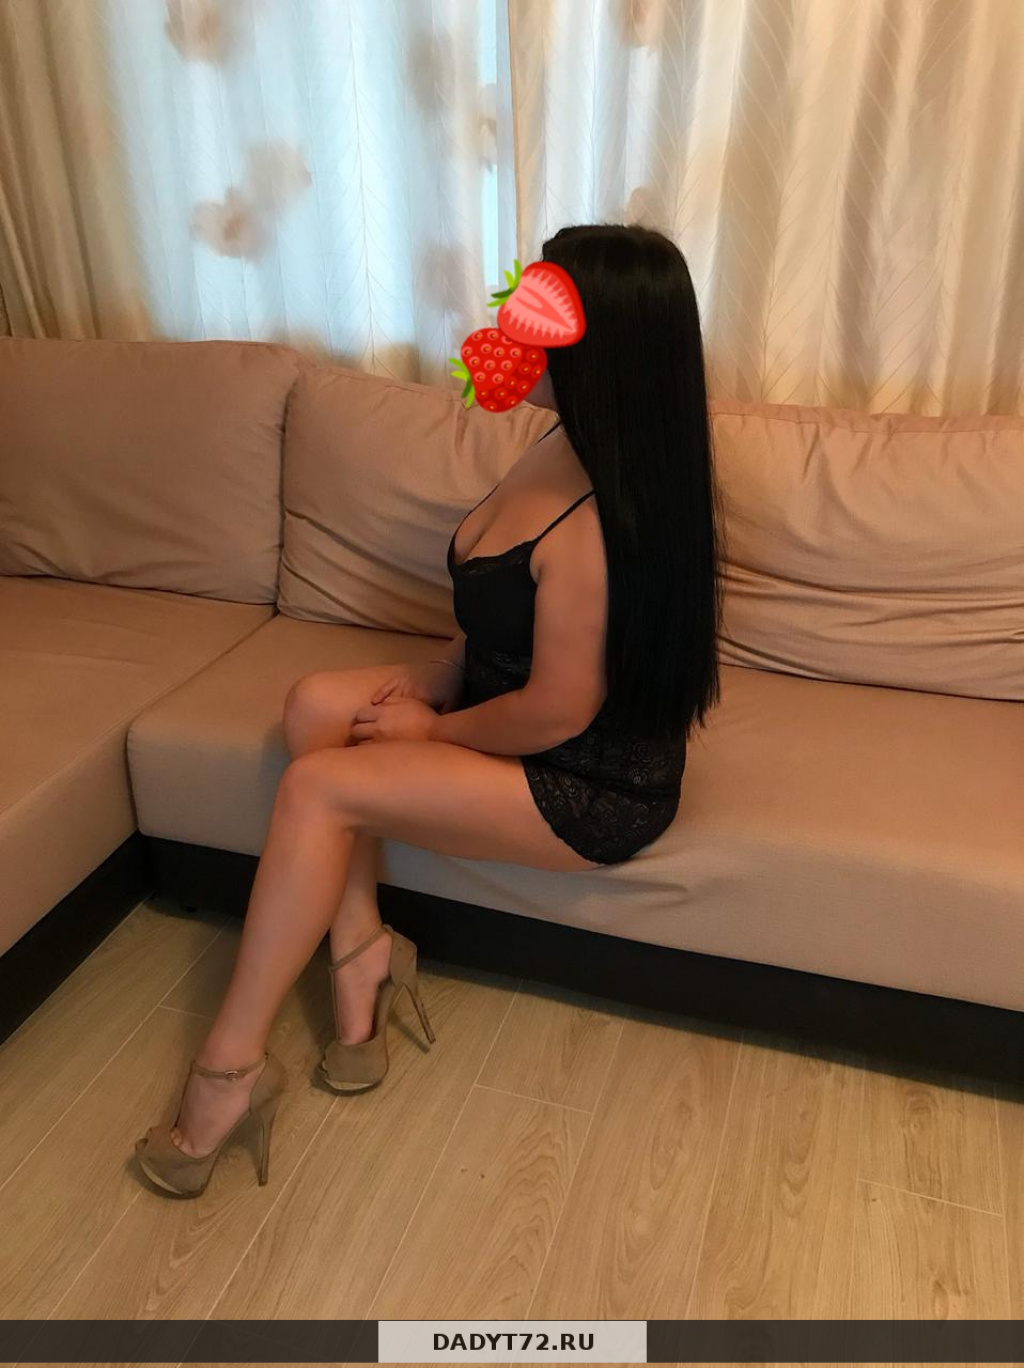 Досуг тюмень индивидуалка проститутка киргизия